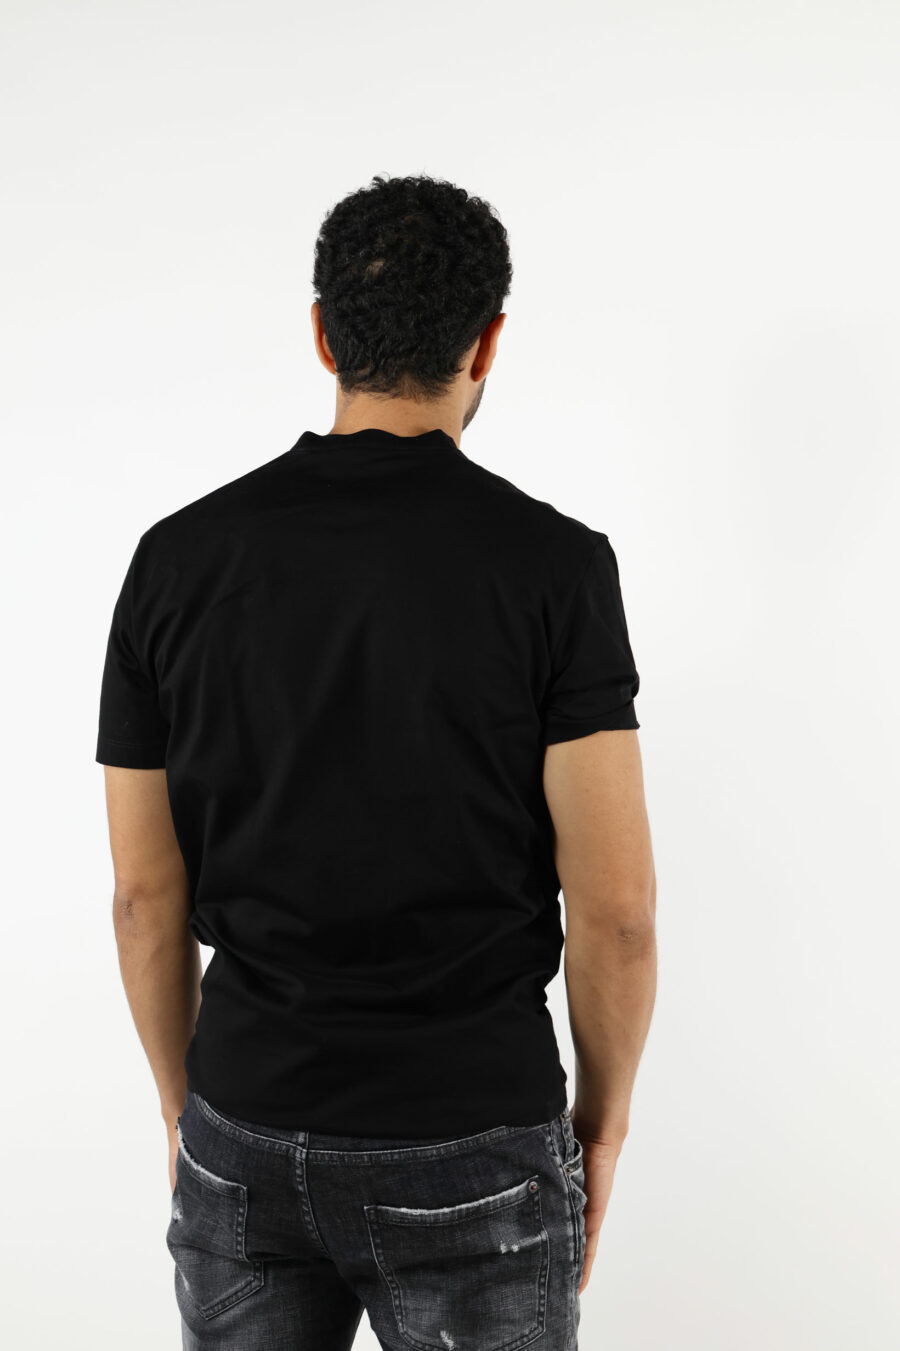 Schwarzes T-Shirt mit schwarzem geprägtem Maxilogo - 111287